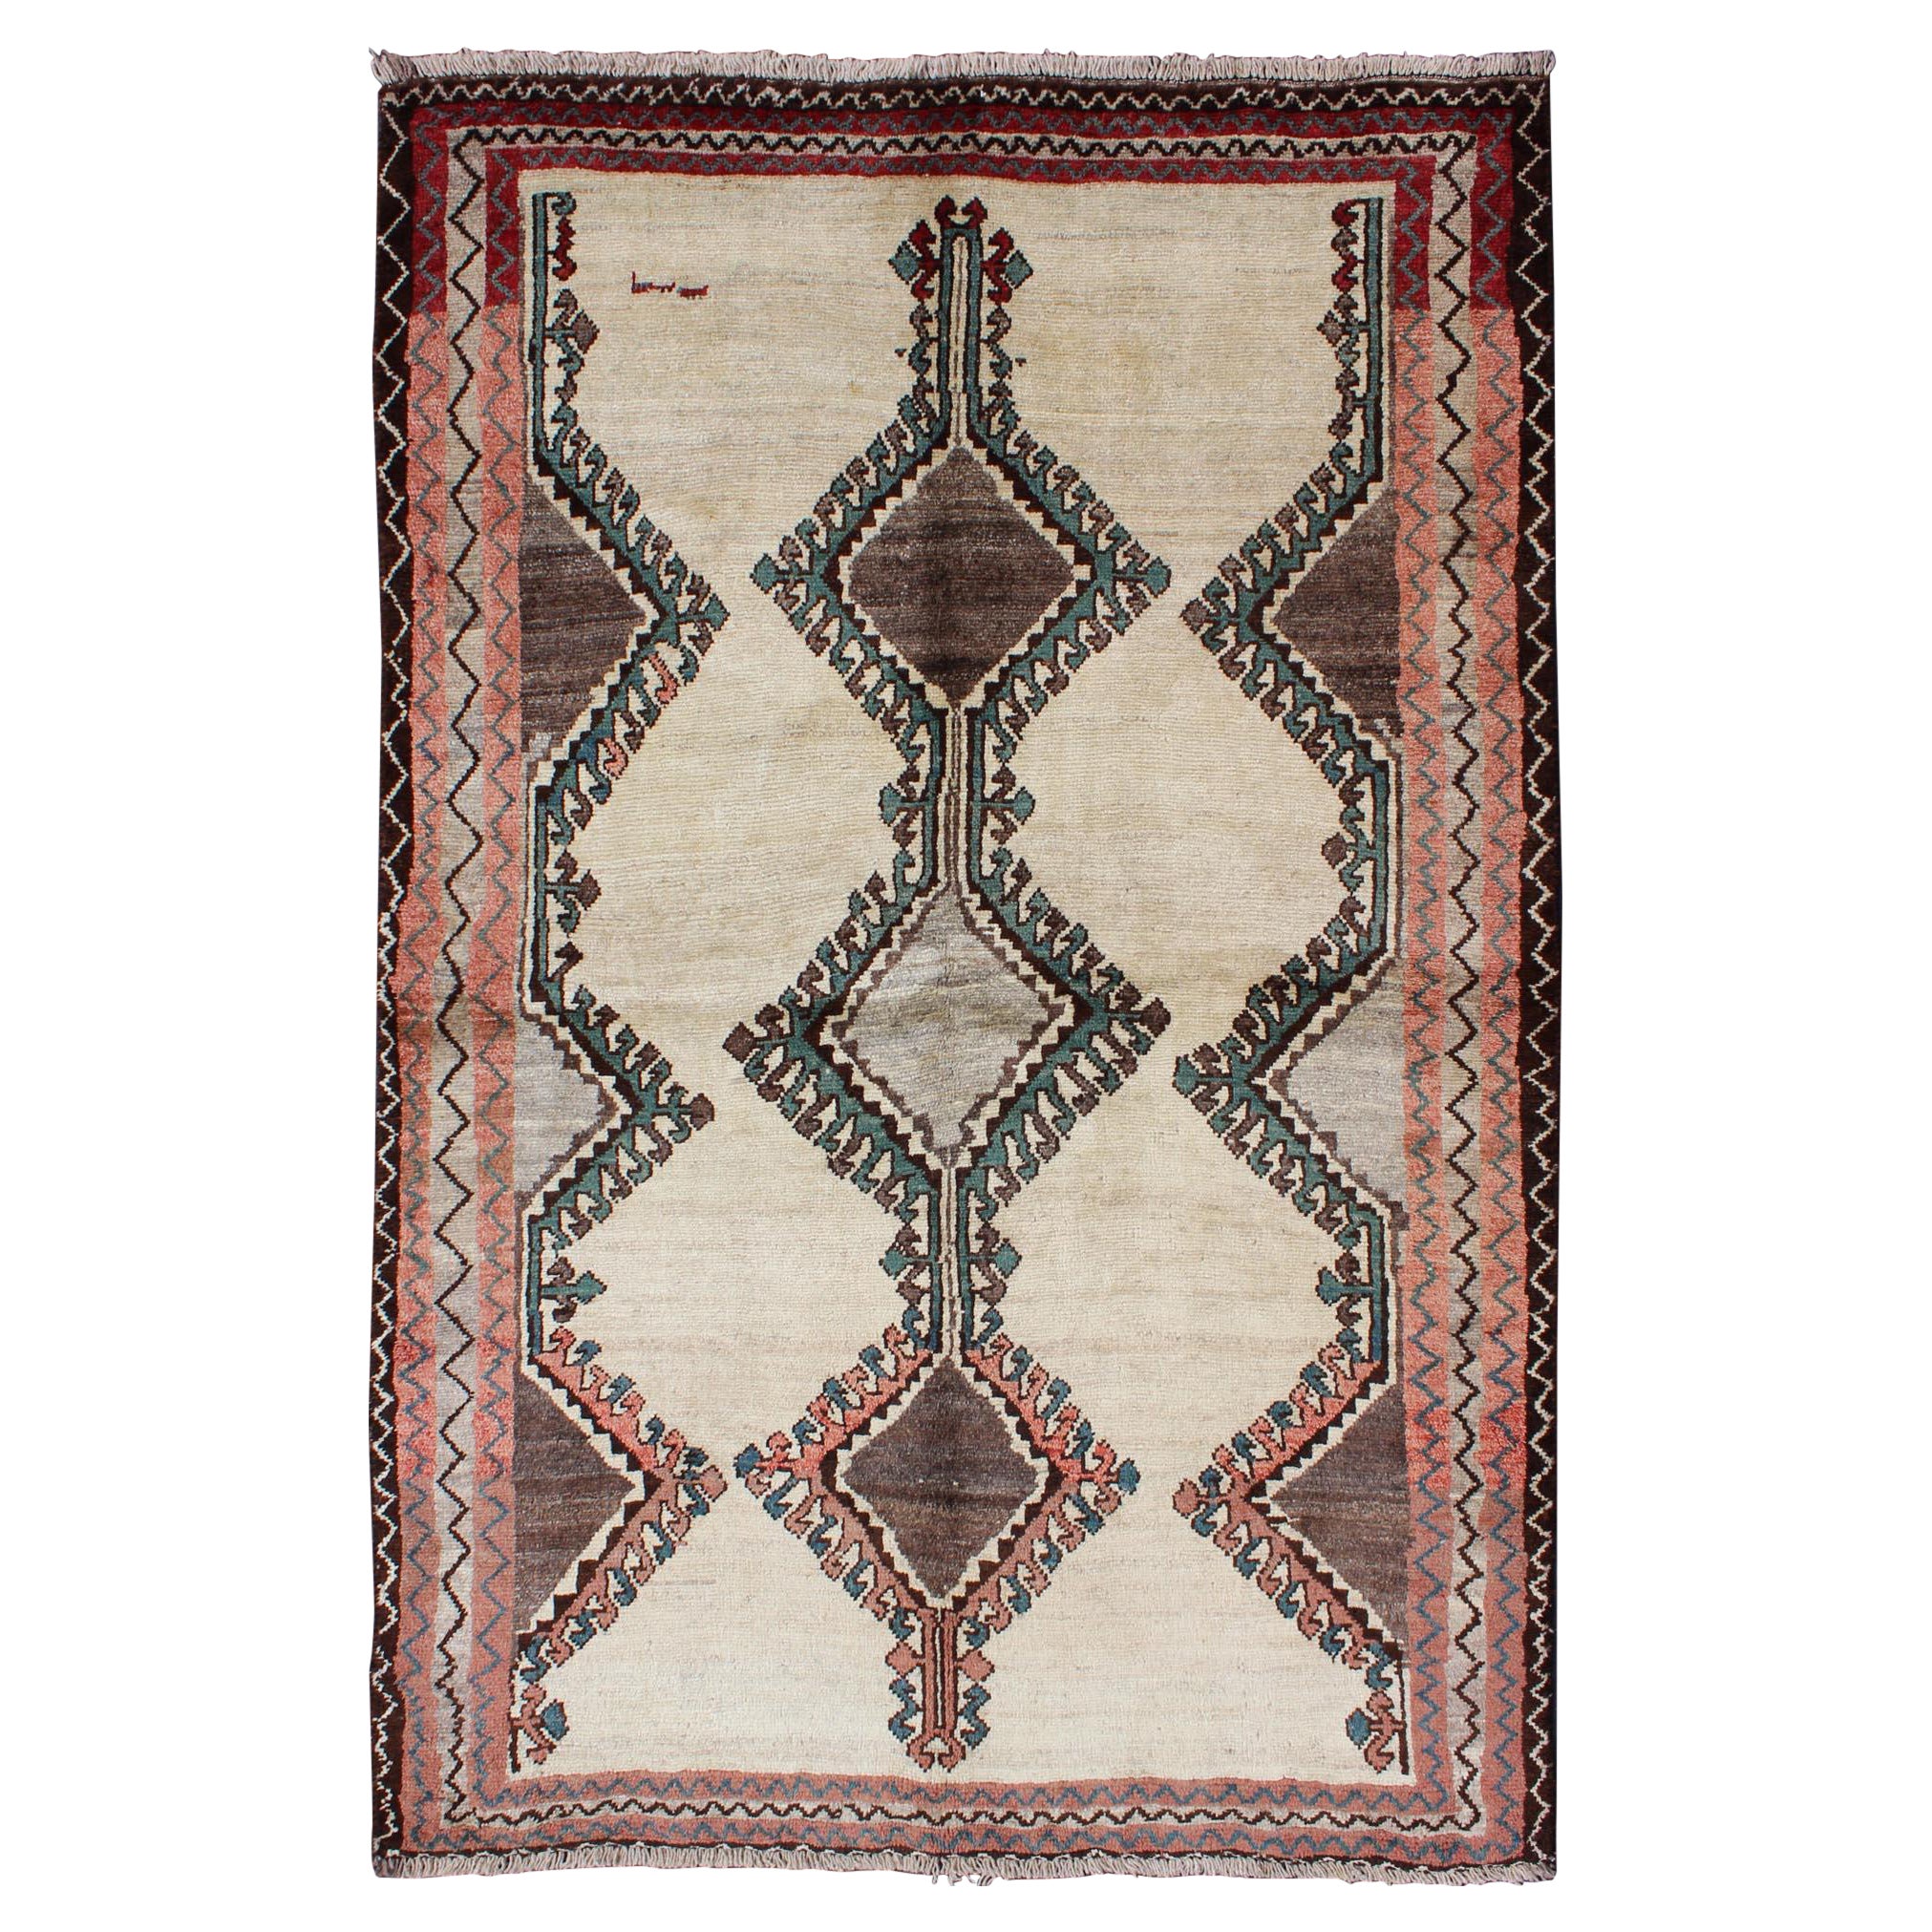 Persischer Gabbeh Vintage-Teppich im Stammesdesign in Creme, Rot und Grün